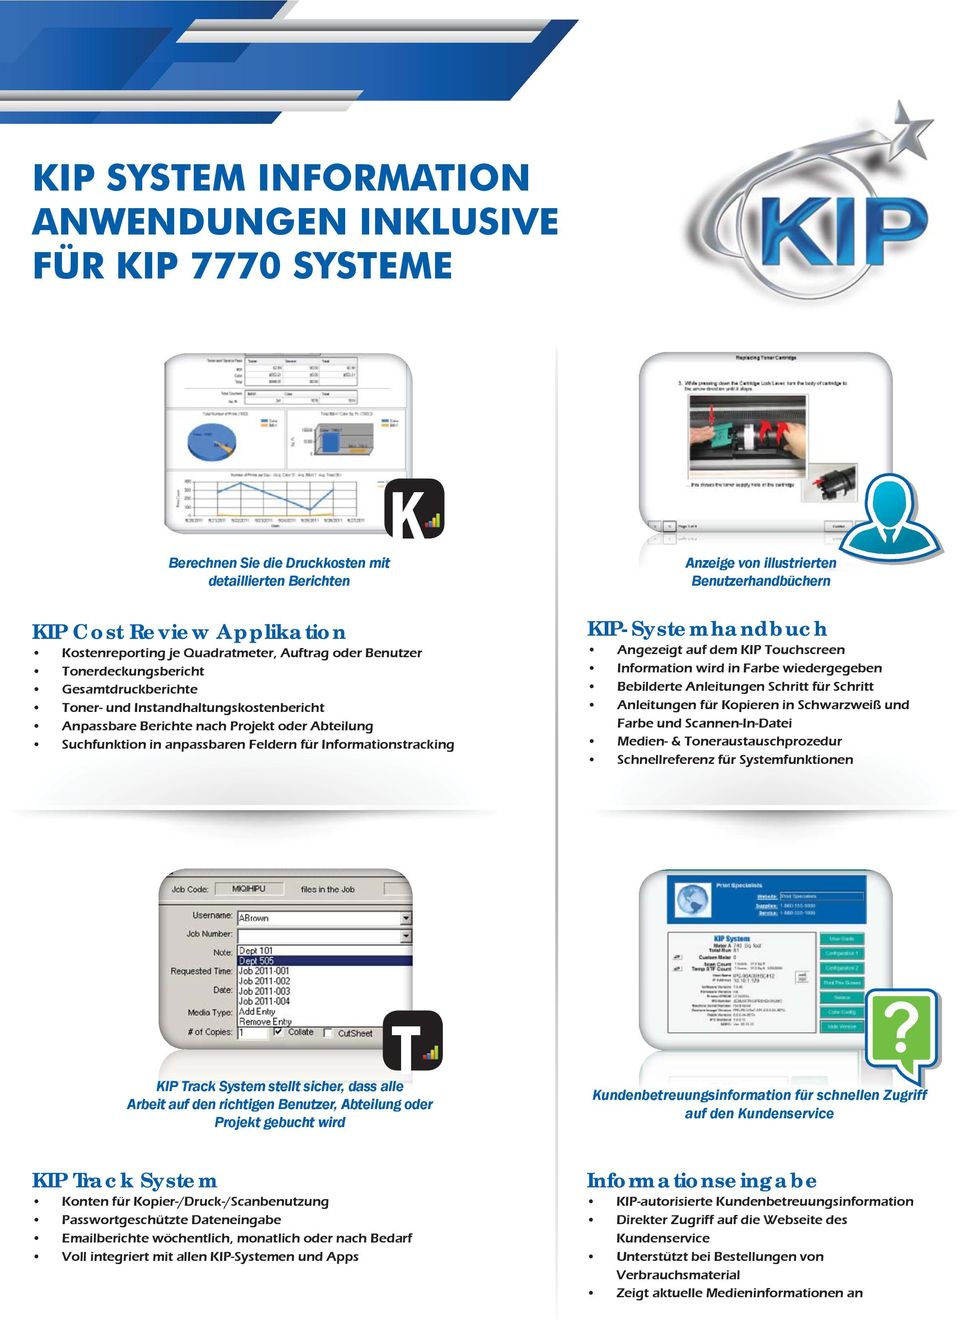 Anzeige von illustrierten Benutzerhandbüchern KIP-Systemhandbuch Angezeigt auf dem KIP Touchscreen Information wird in Farbe wiedergegeben Bebilderte Anleitungen Schritt für Schritt Anleitungen für